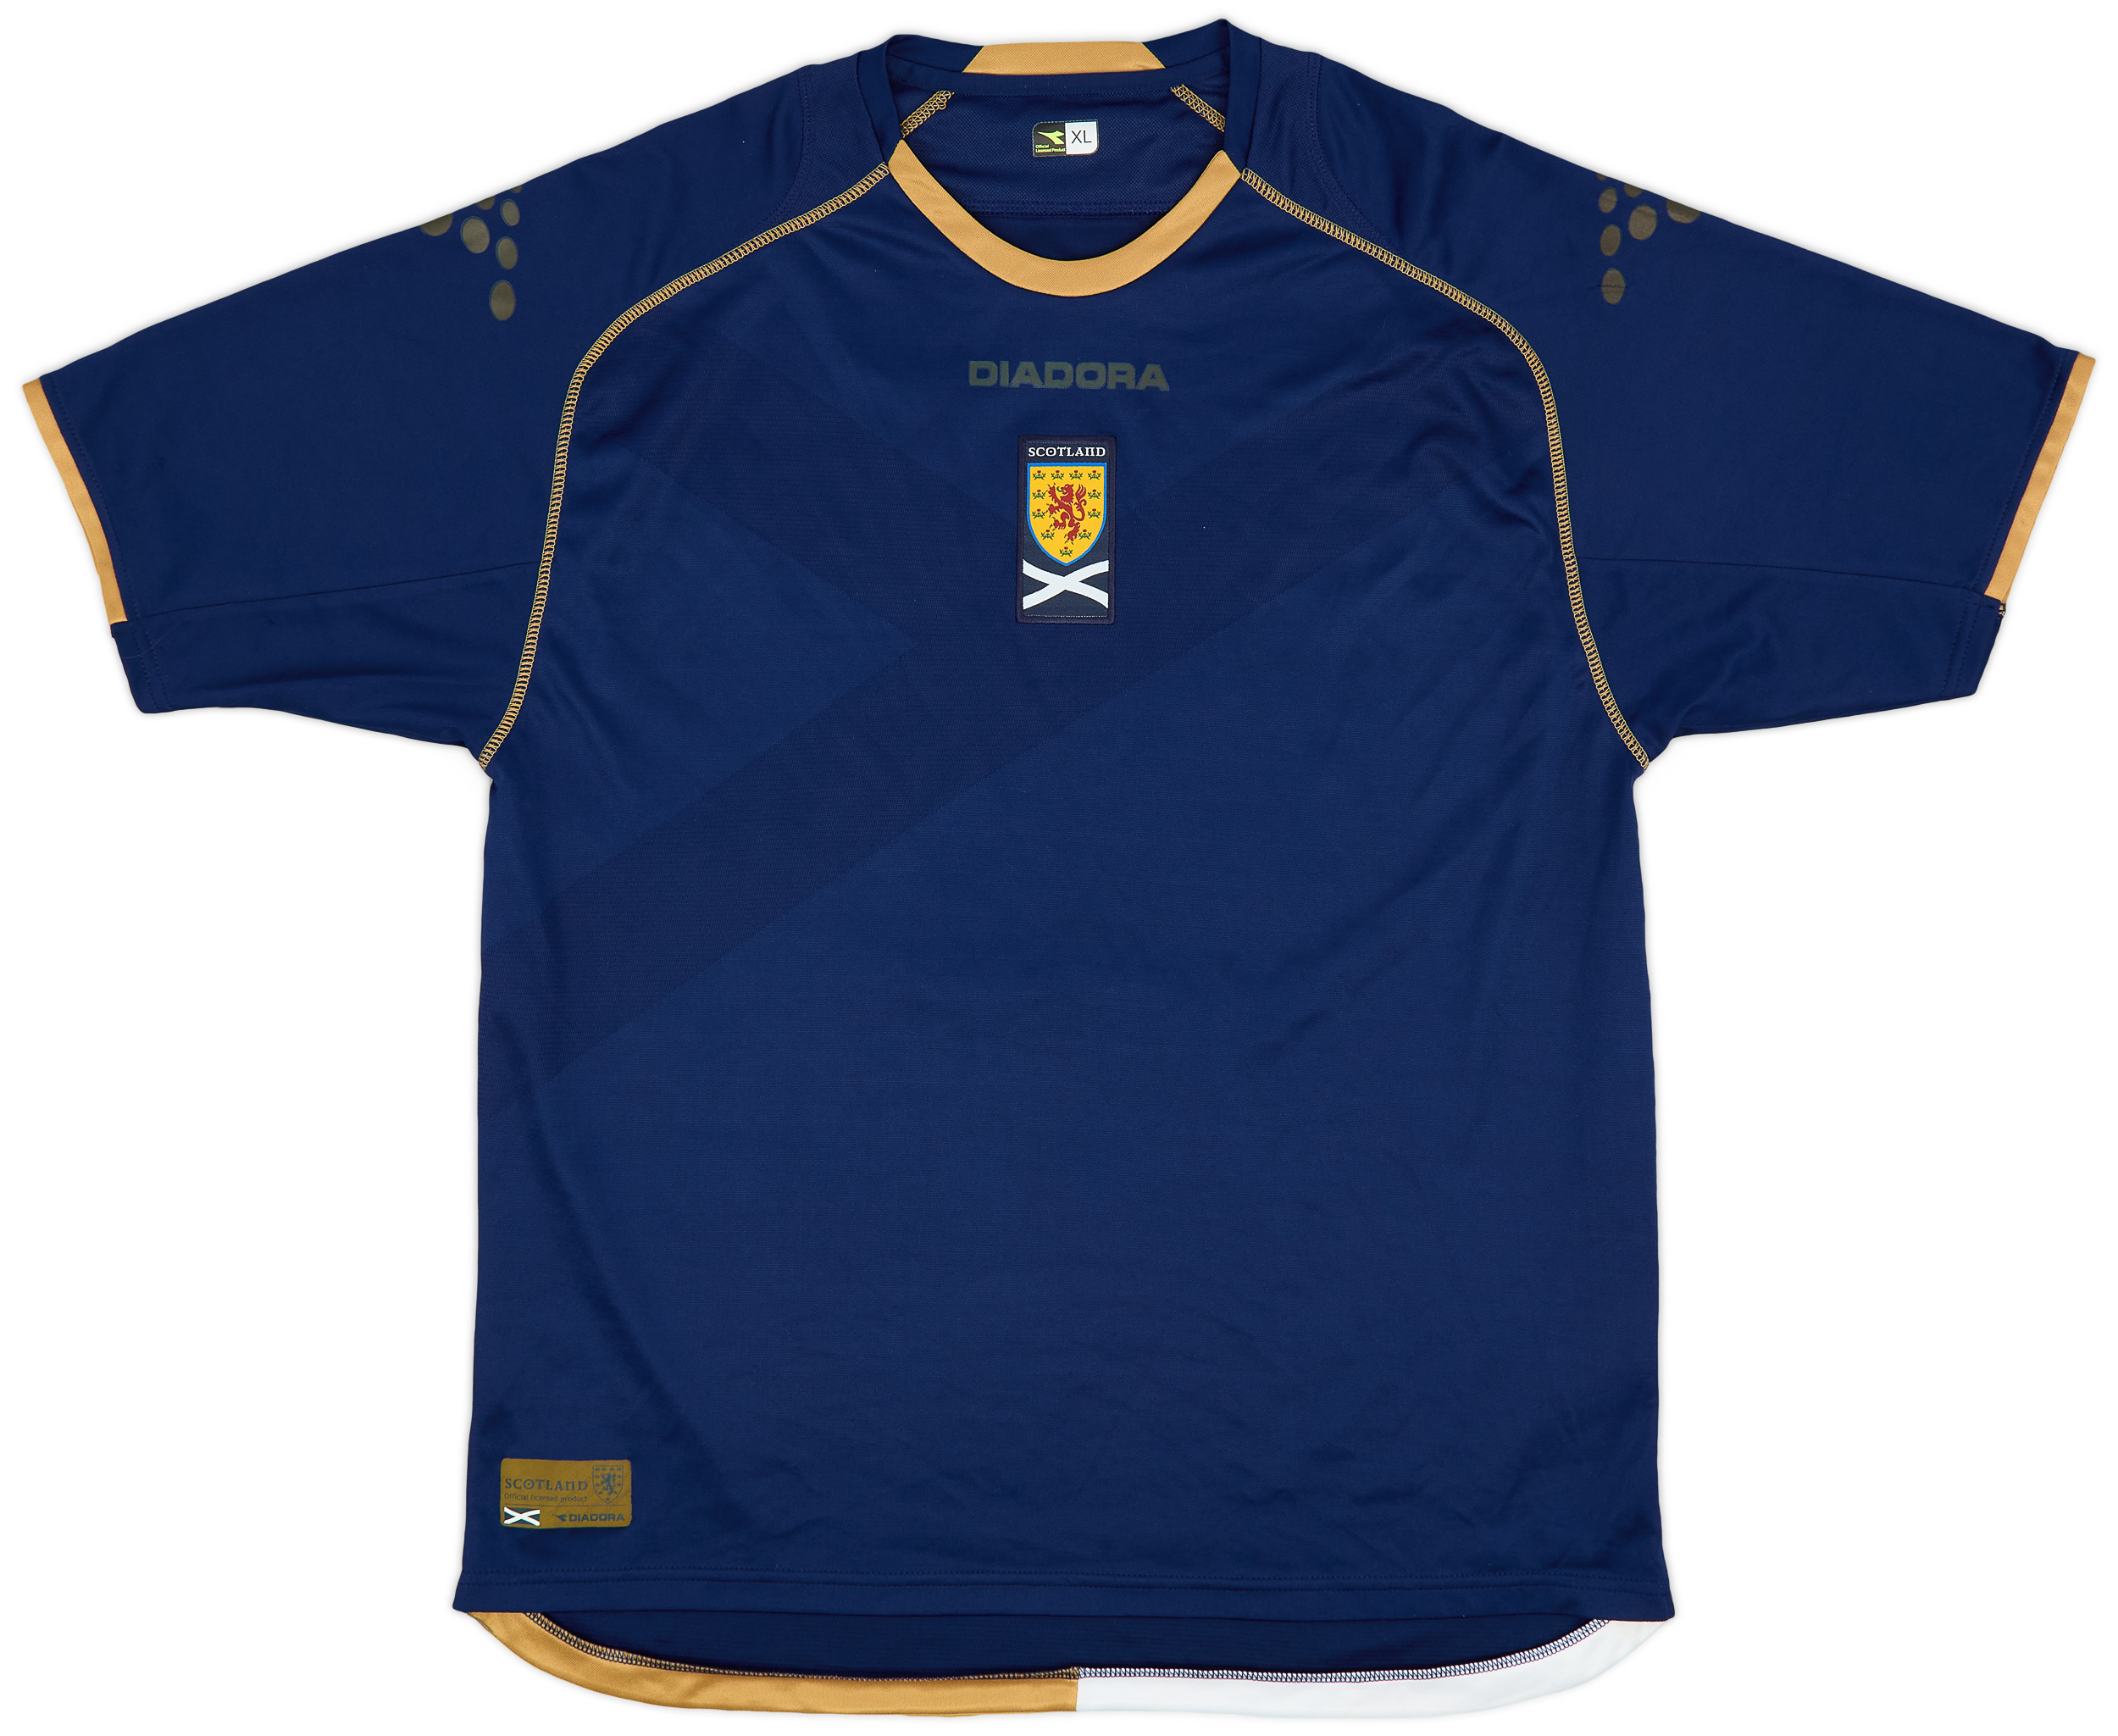 2007-08 Scotland Home Shirt - 9/10 - ()